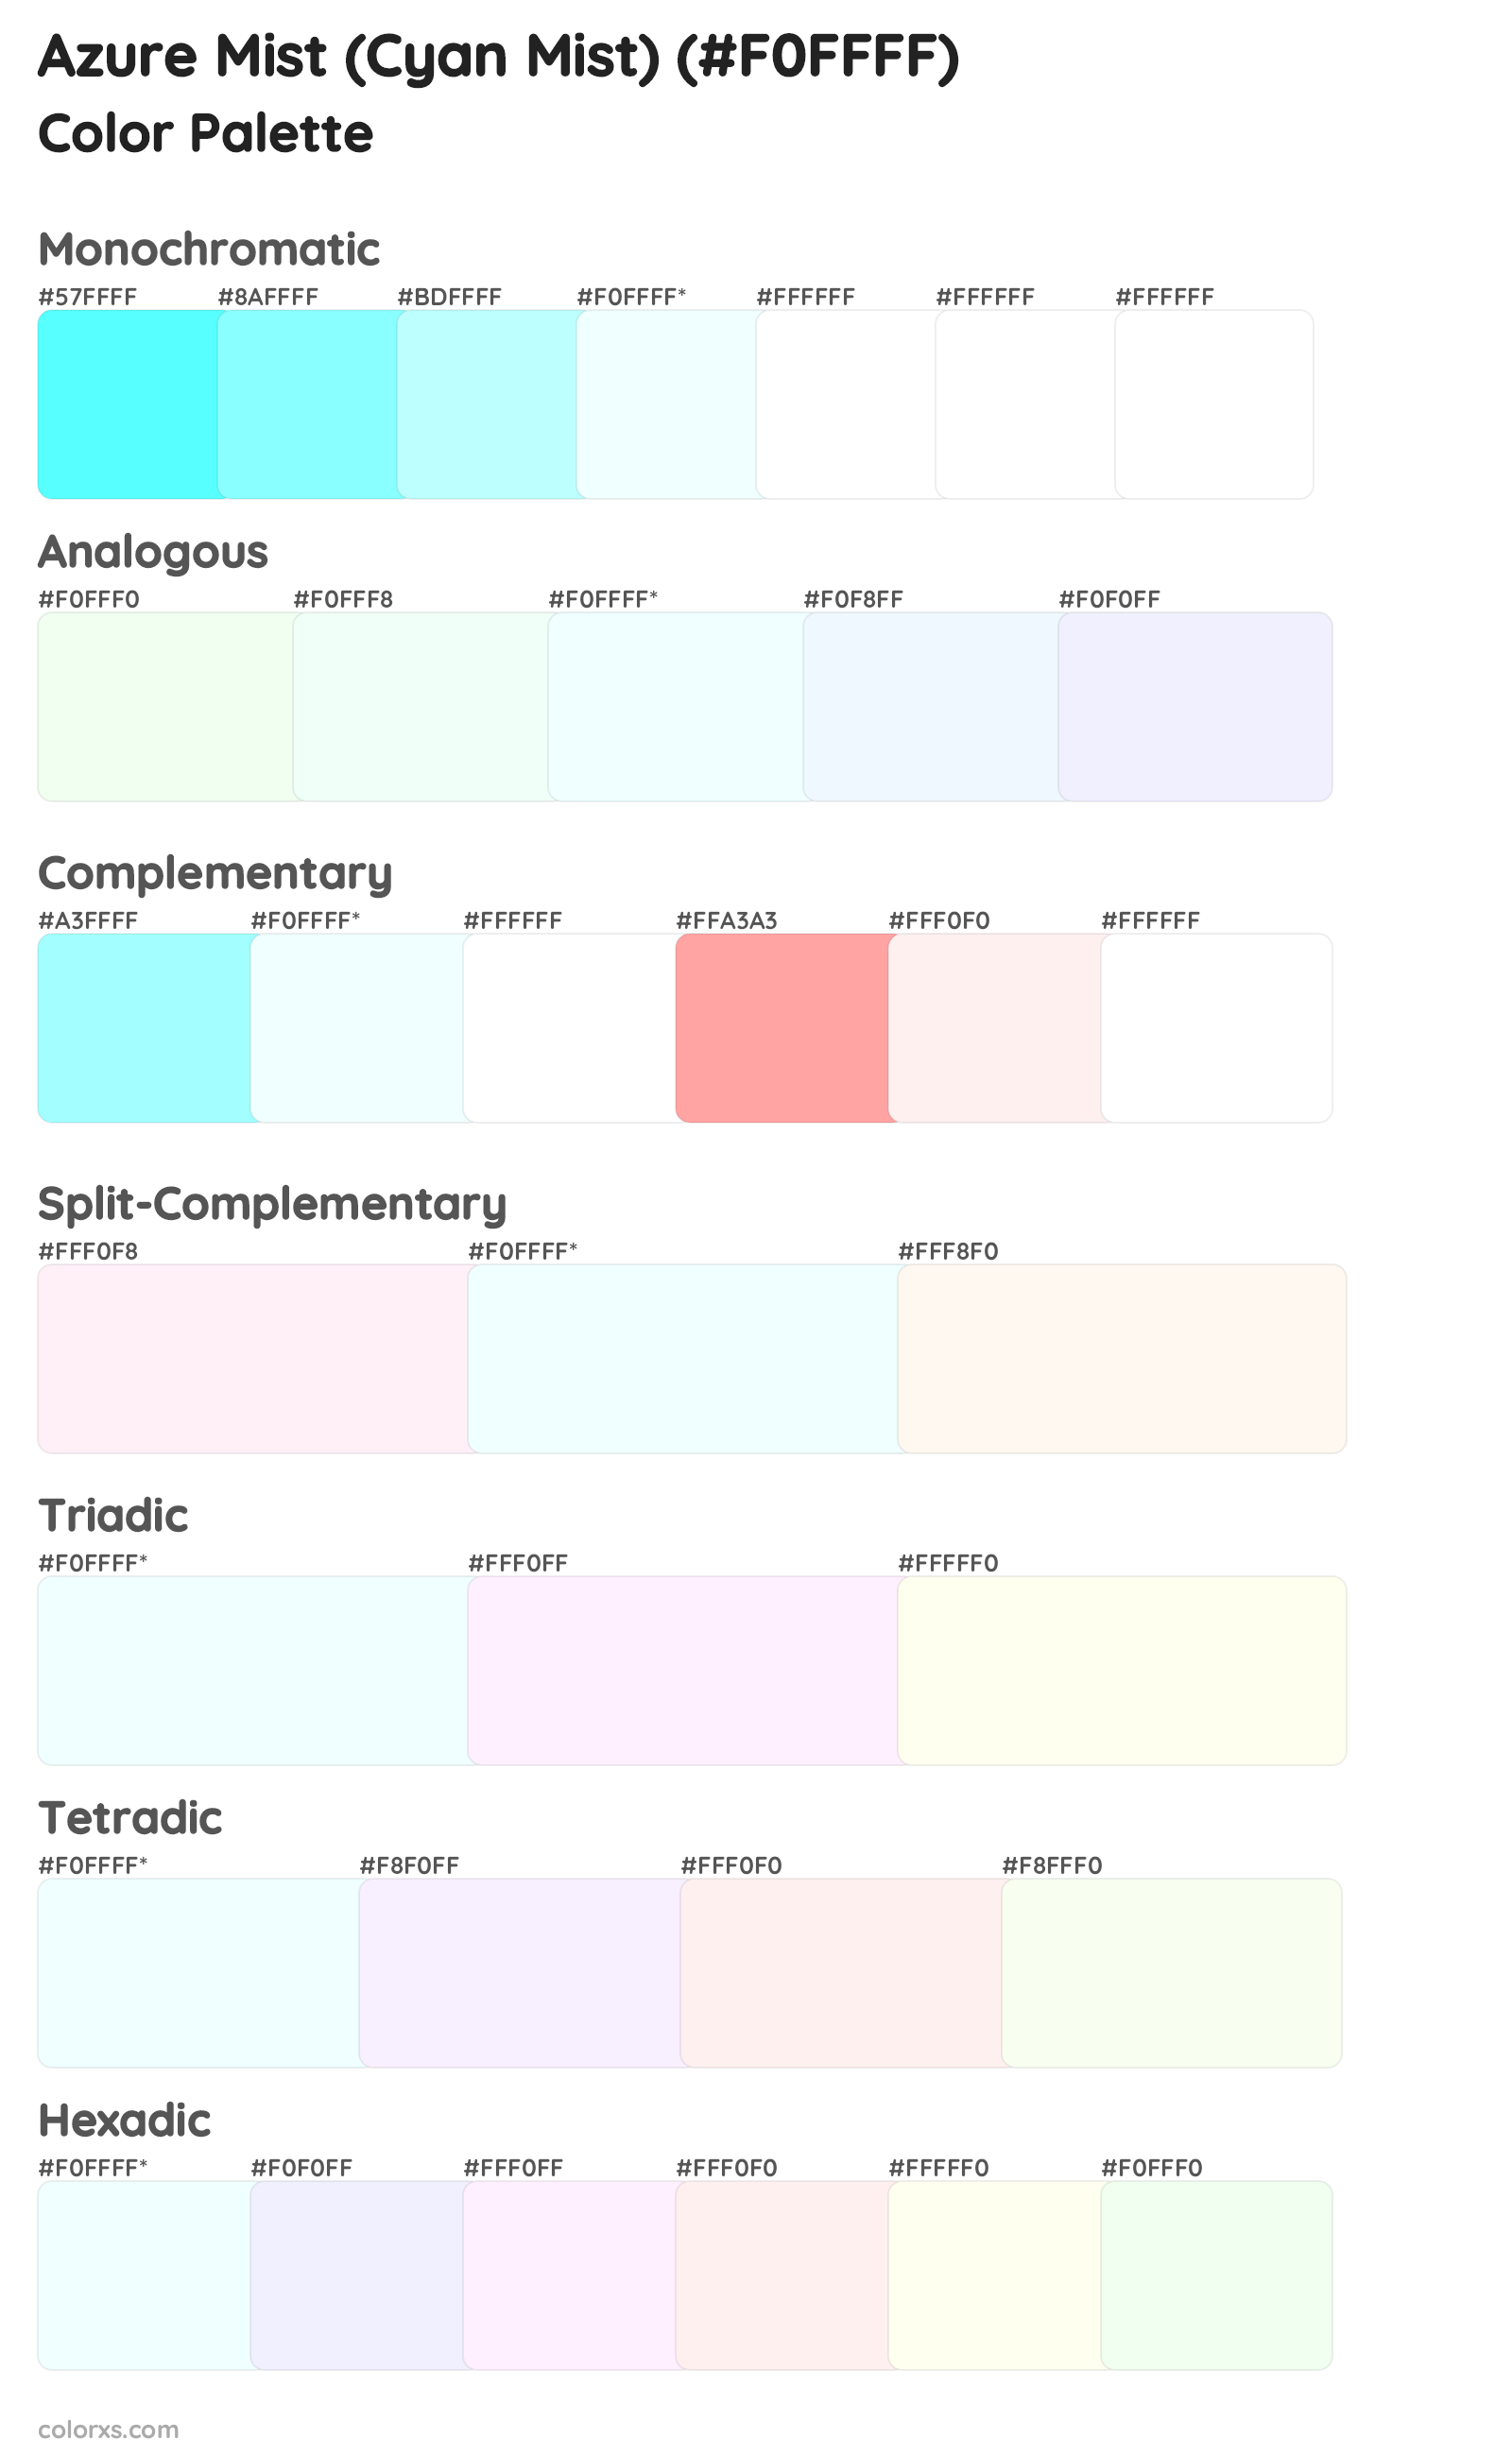 Azure Mist (Cyan Mist) Color Scheme Palettes